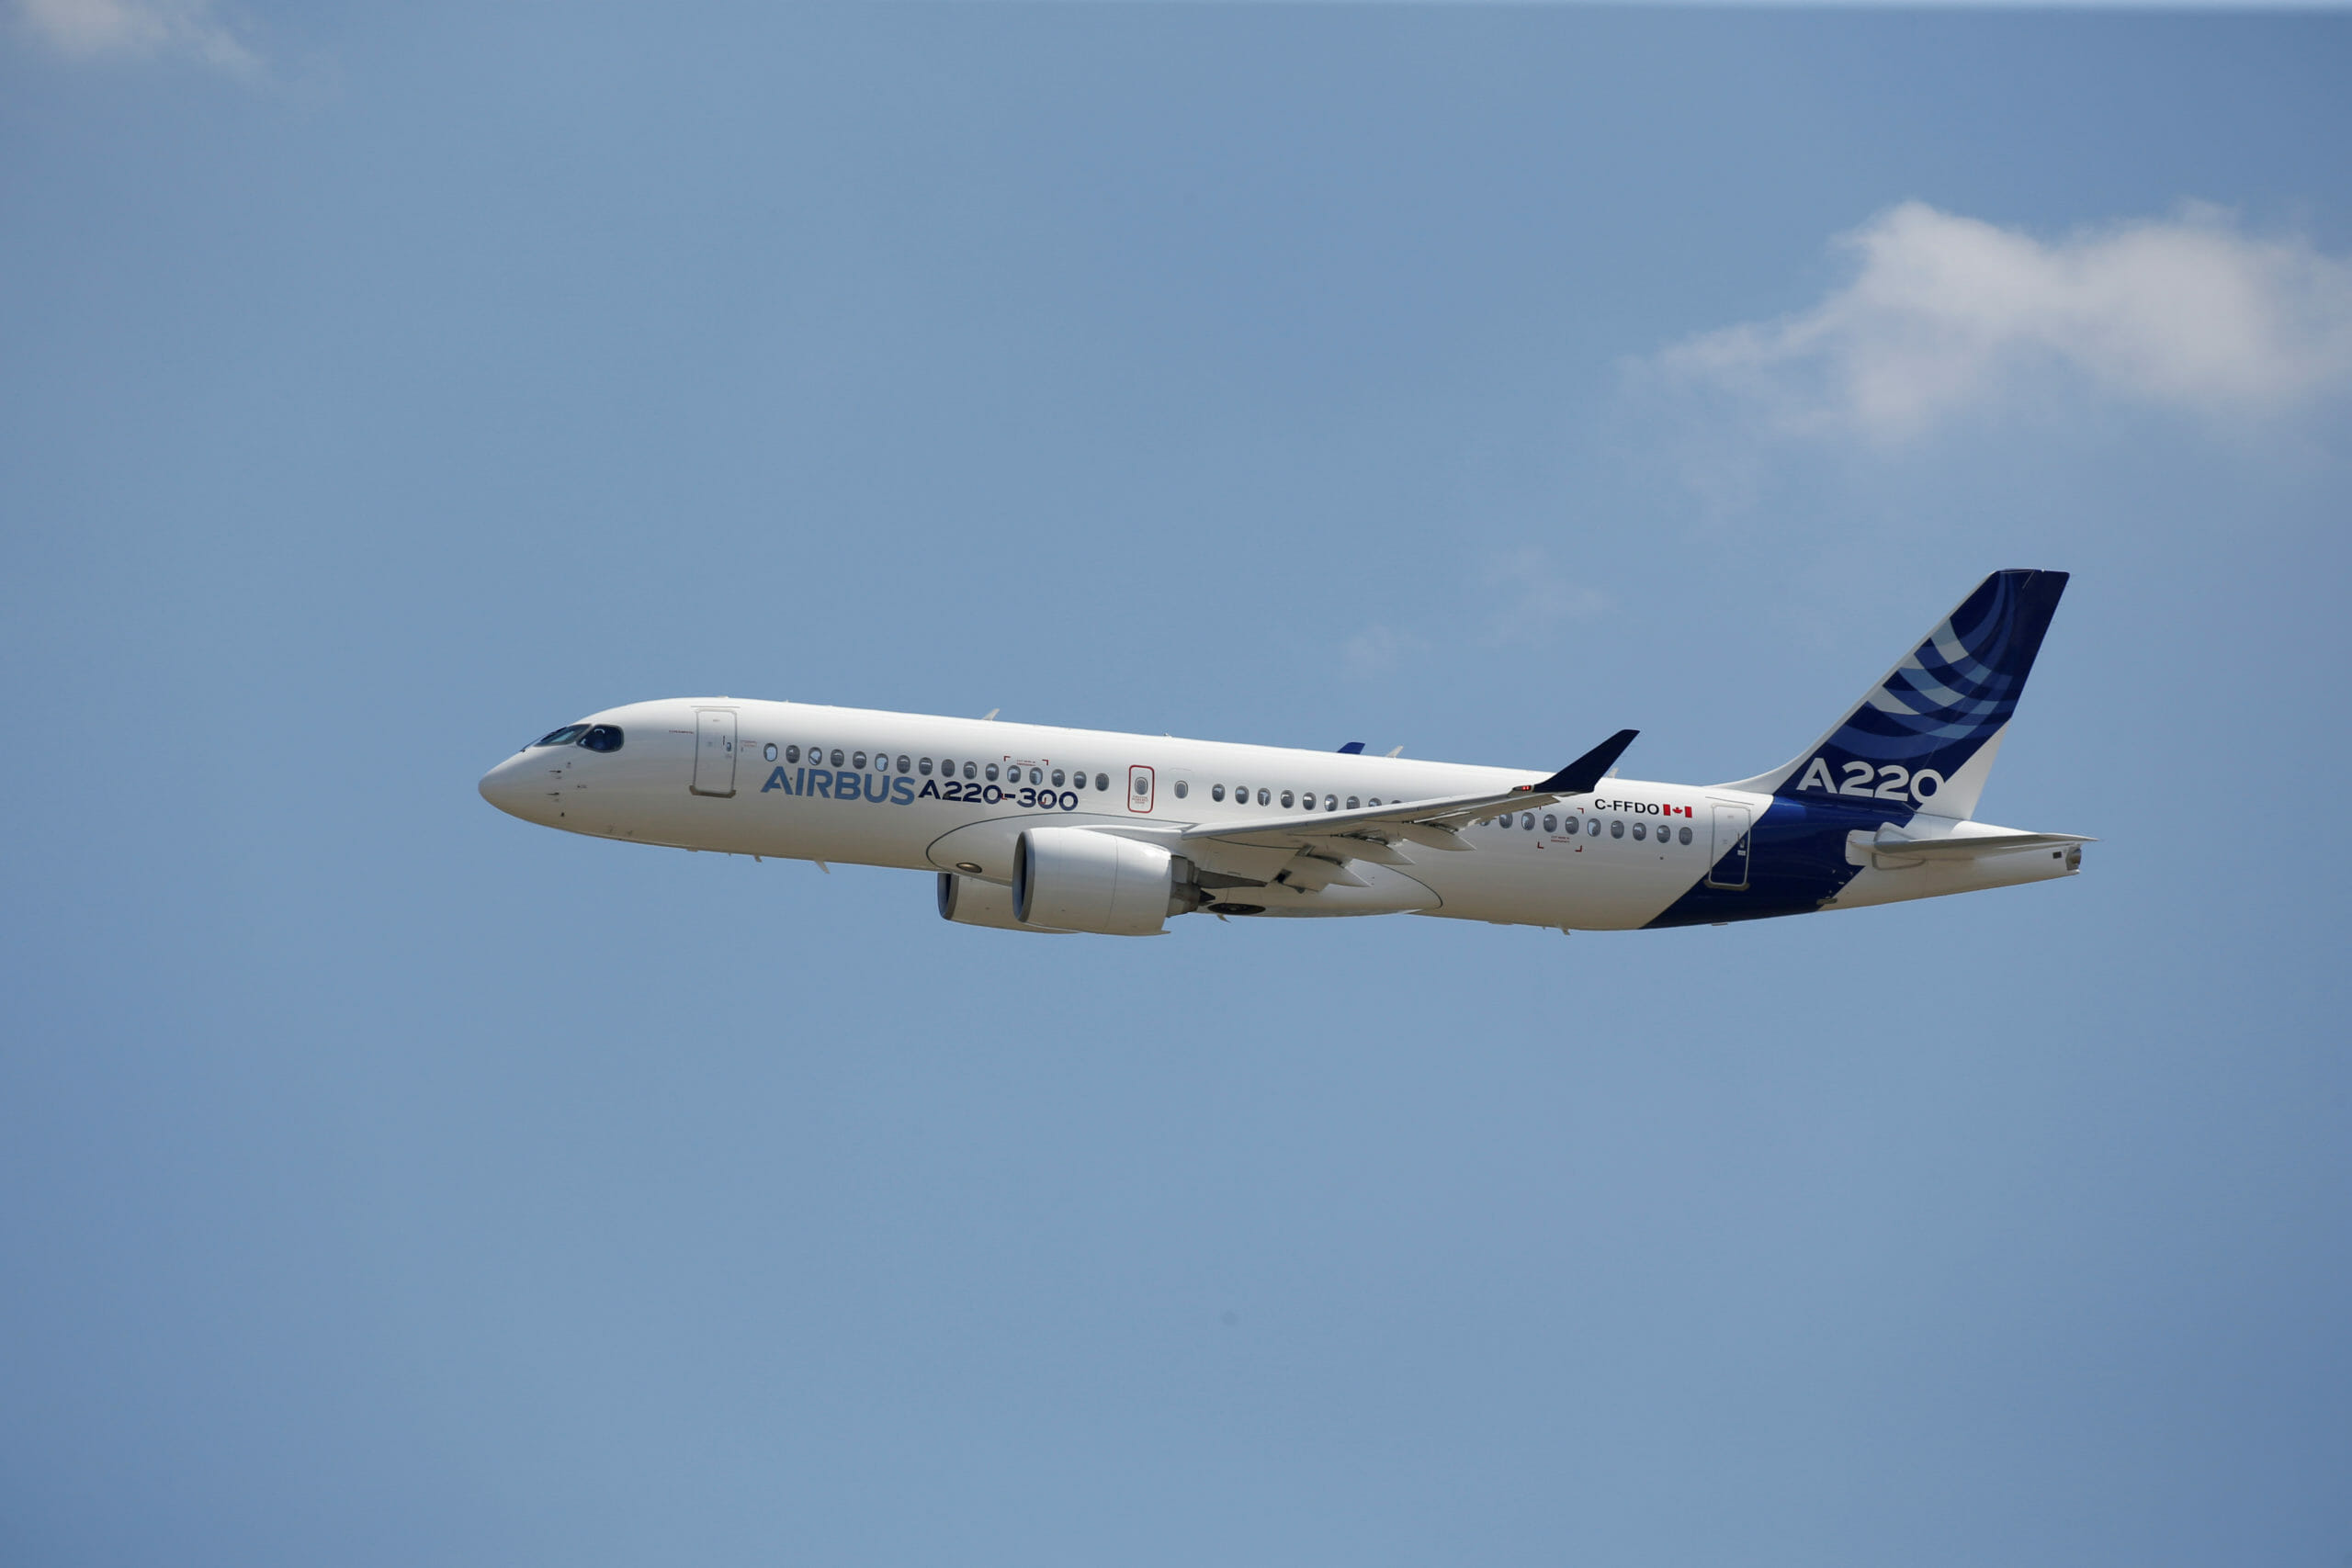 ΗΠΑ: Αυξάνονται οι τιμωρητικοί δασμοί στην Airbus